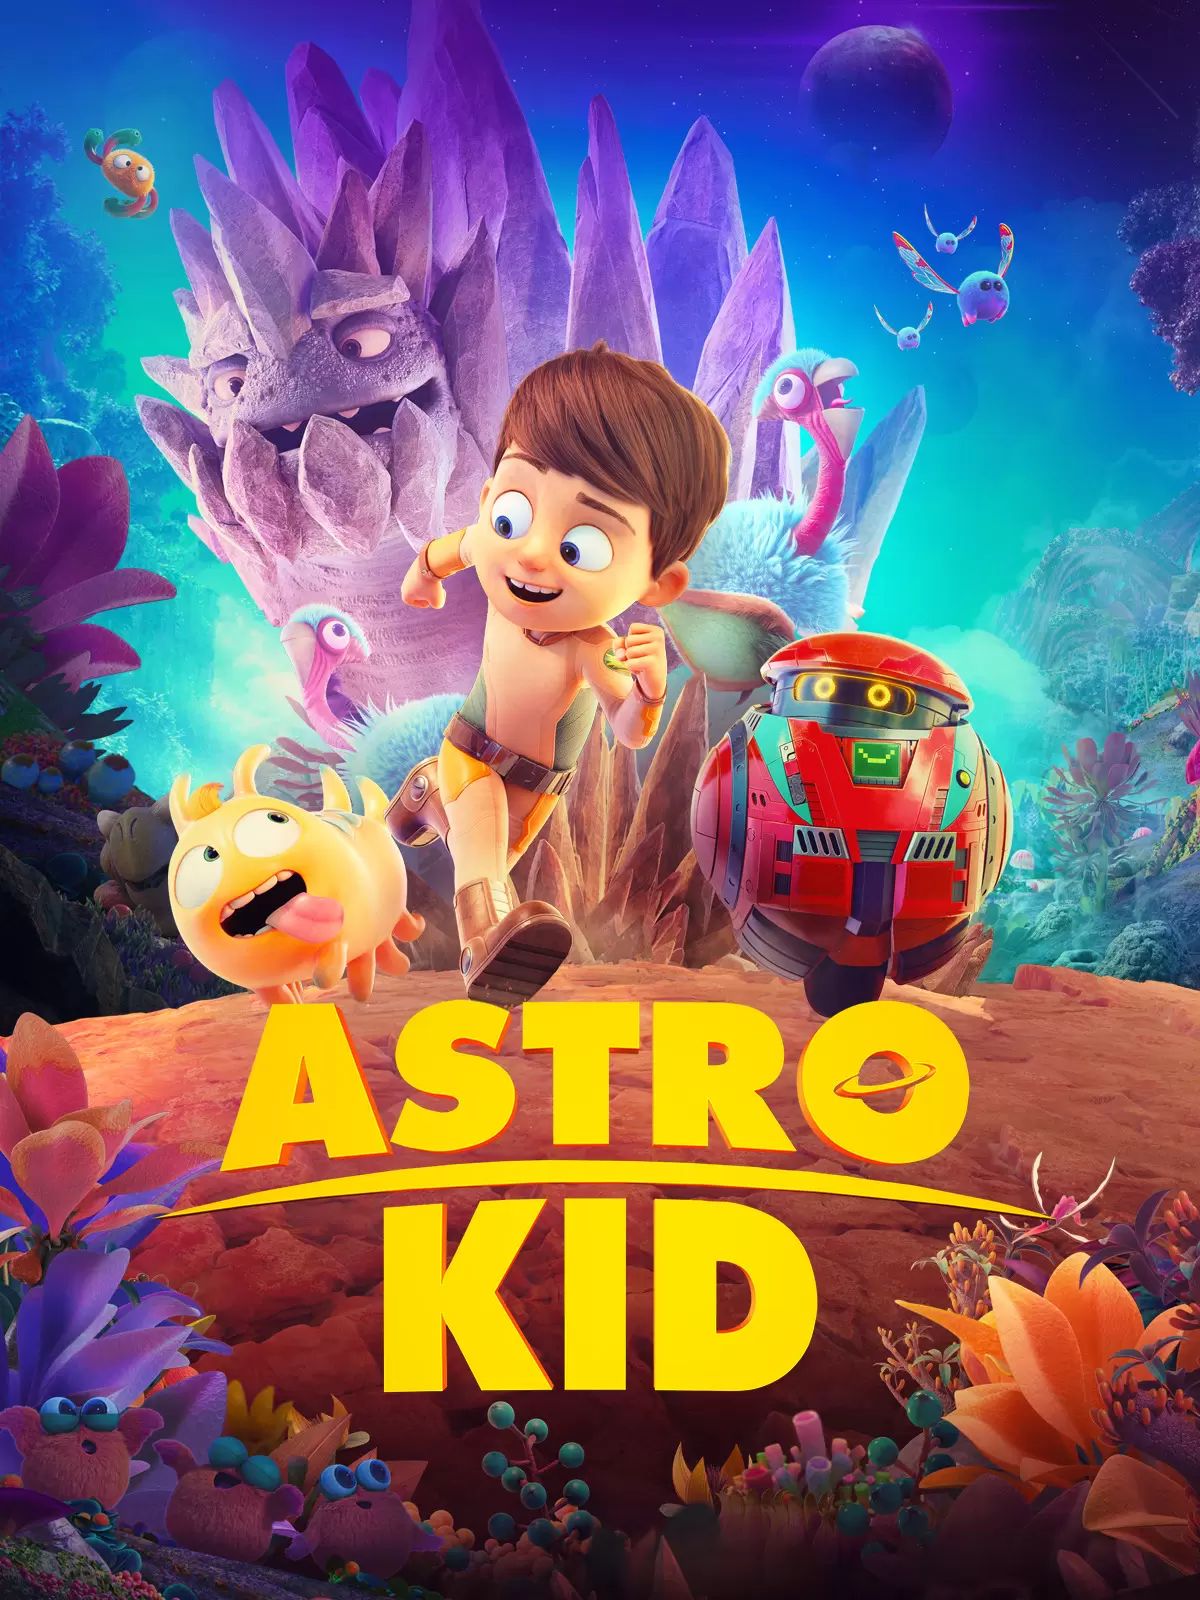 فیلم بچه فضایی astro kid